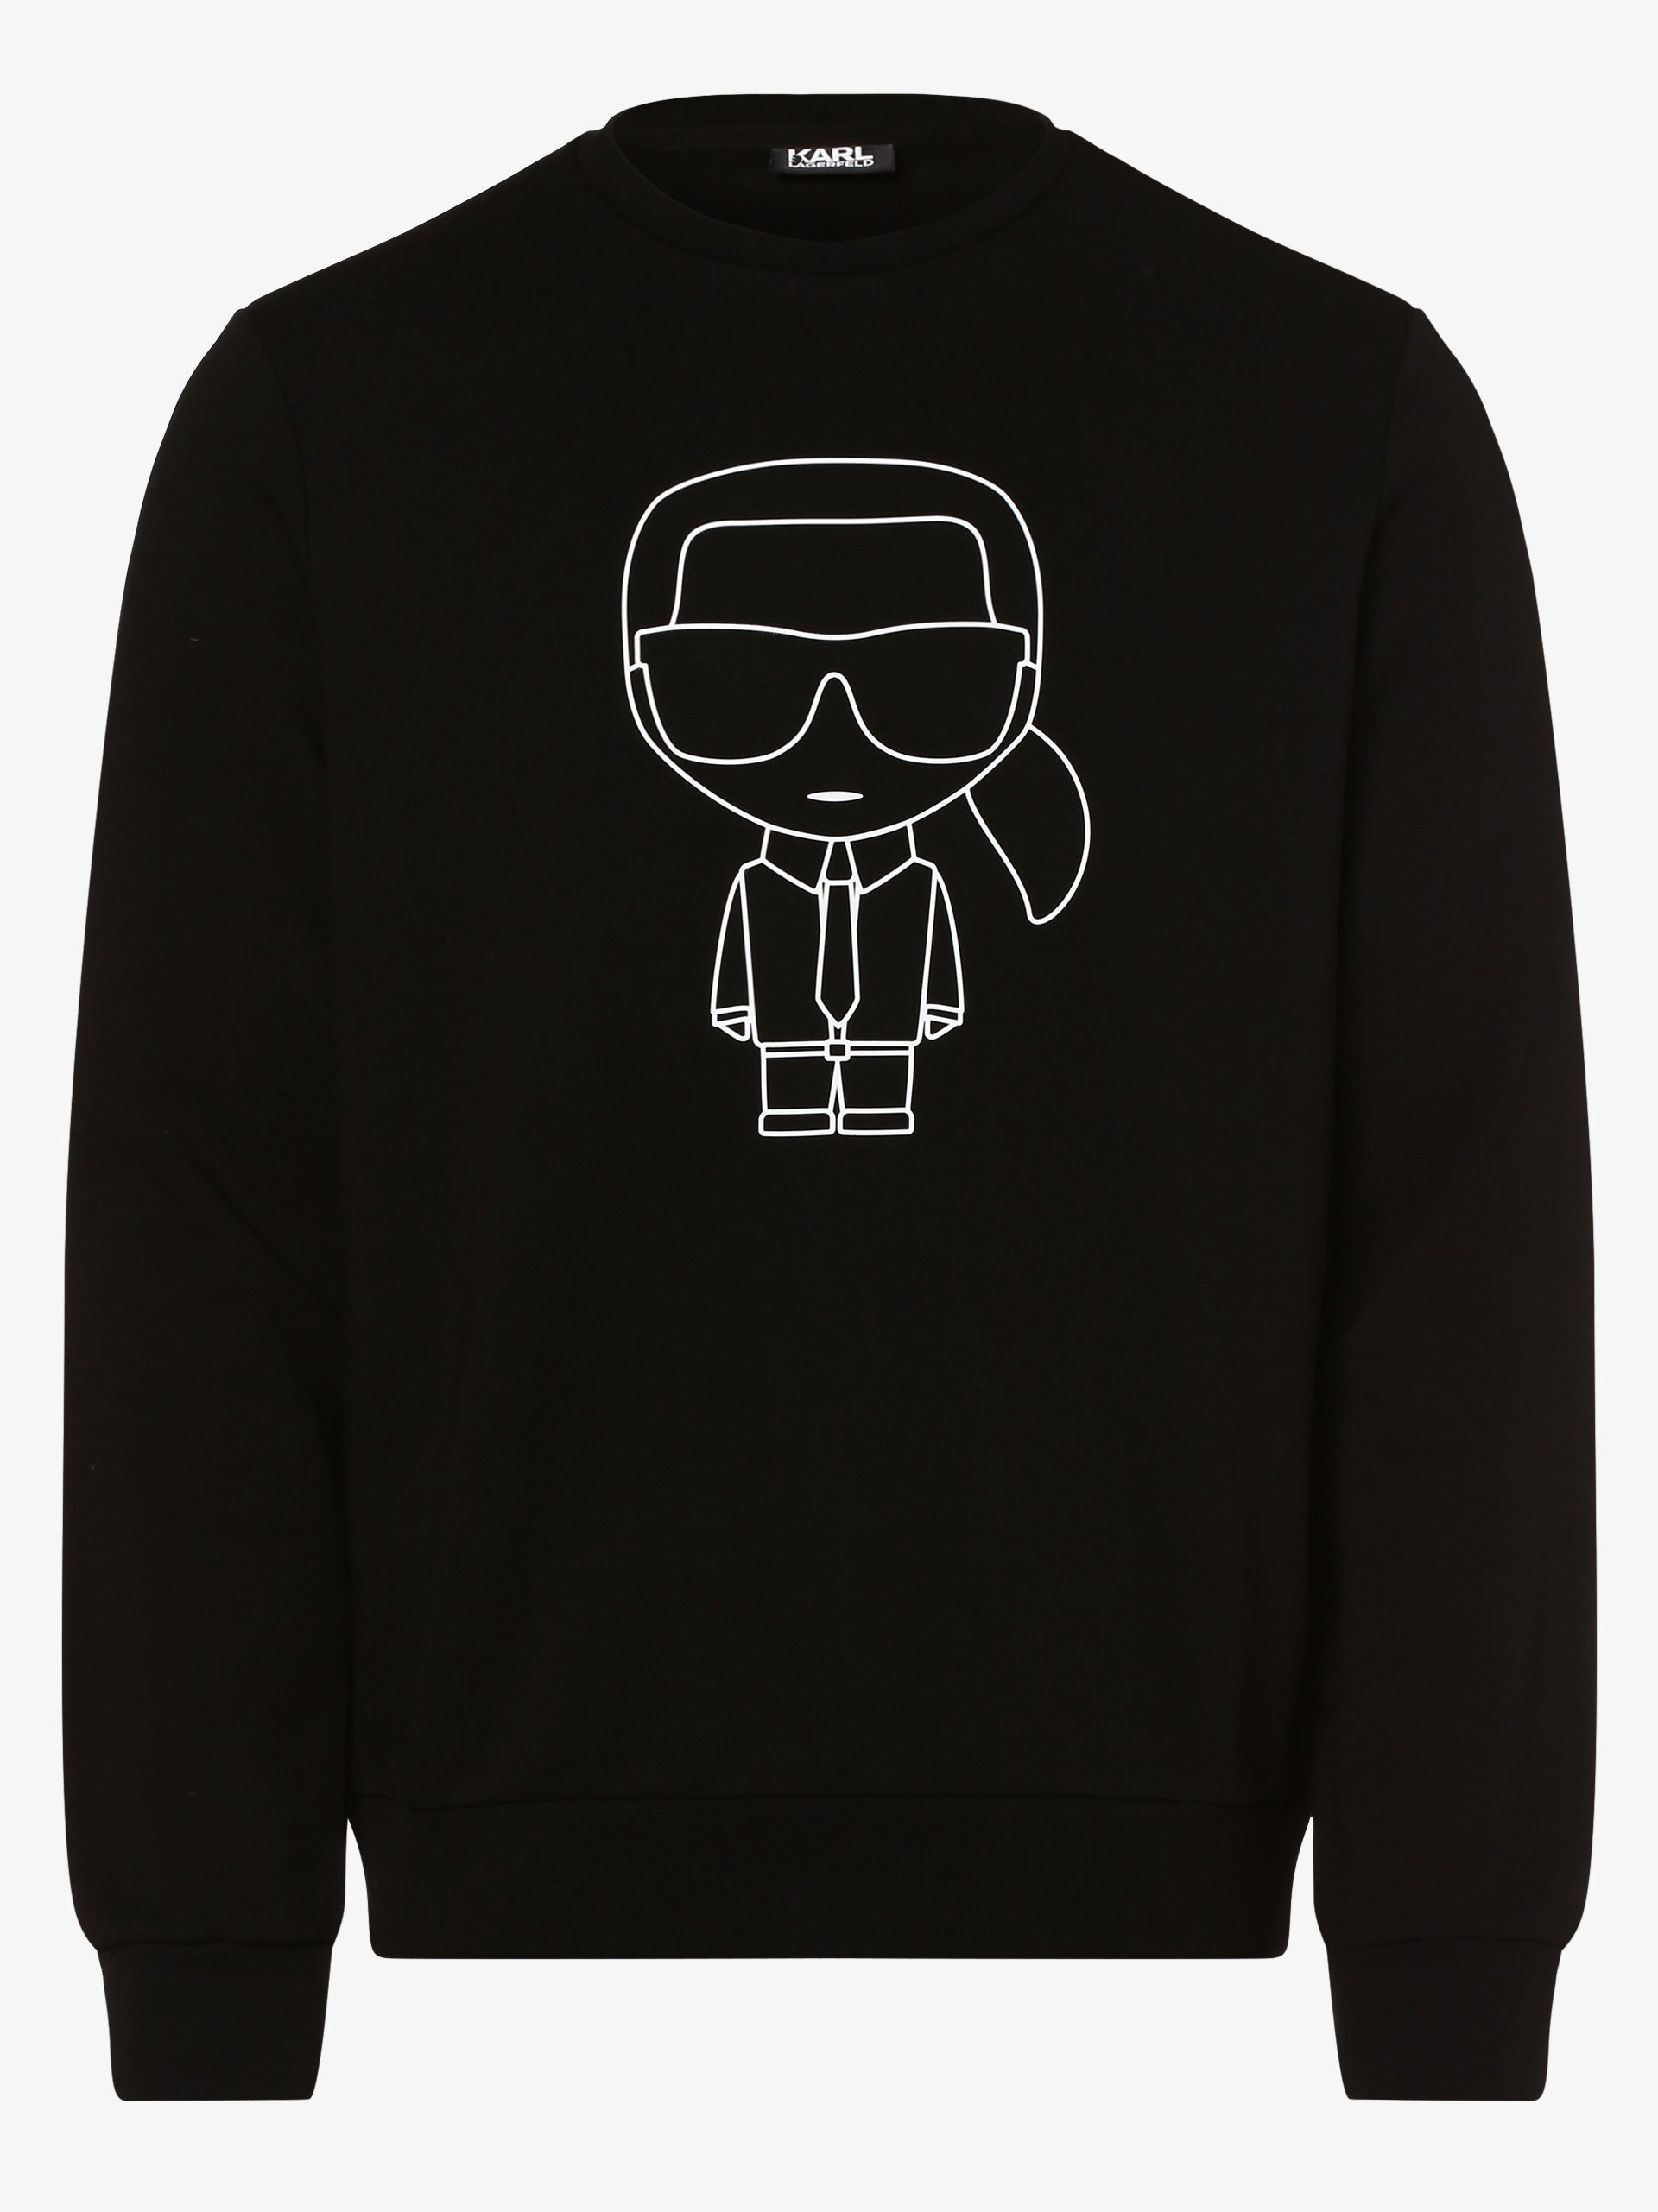 KARL LAGERFELD Sweatshirt online kaufen | OTTO